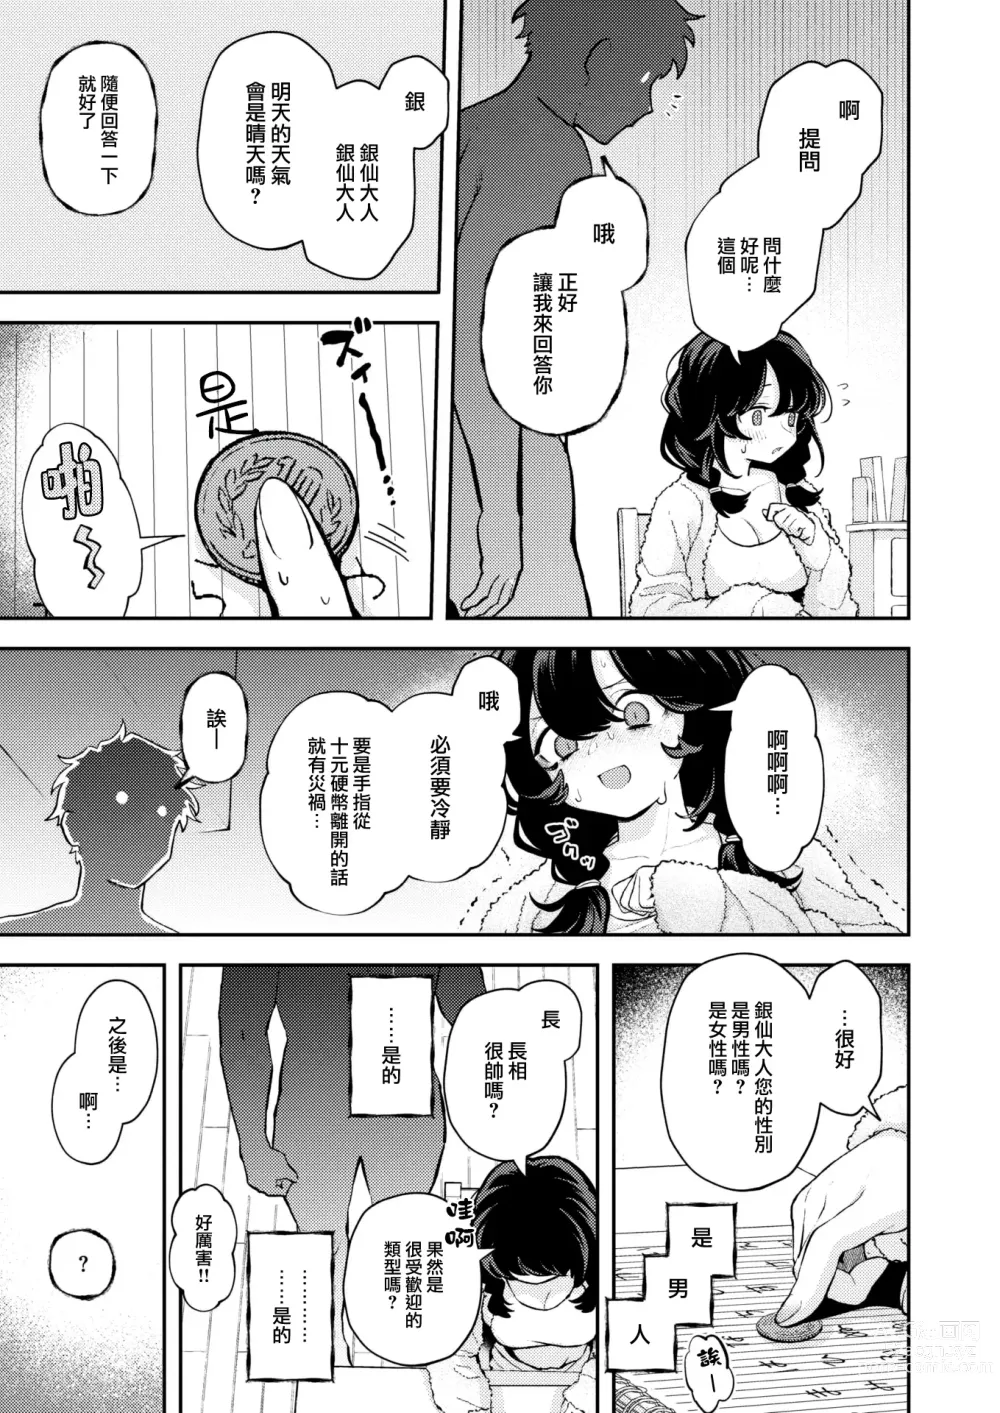 Page 6 of manga Hitori de Shinaide